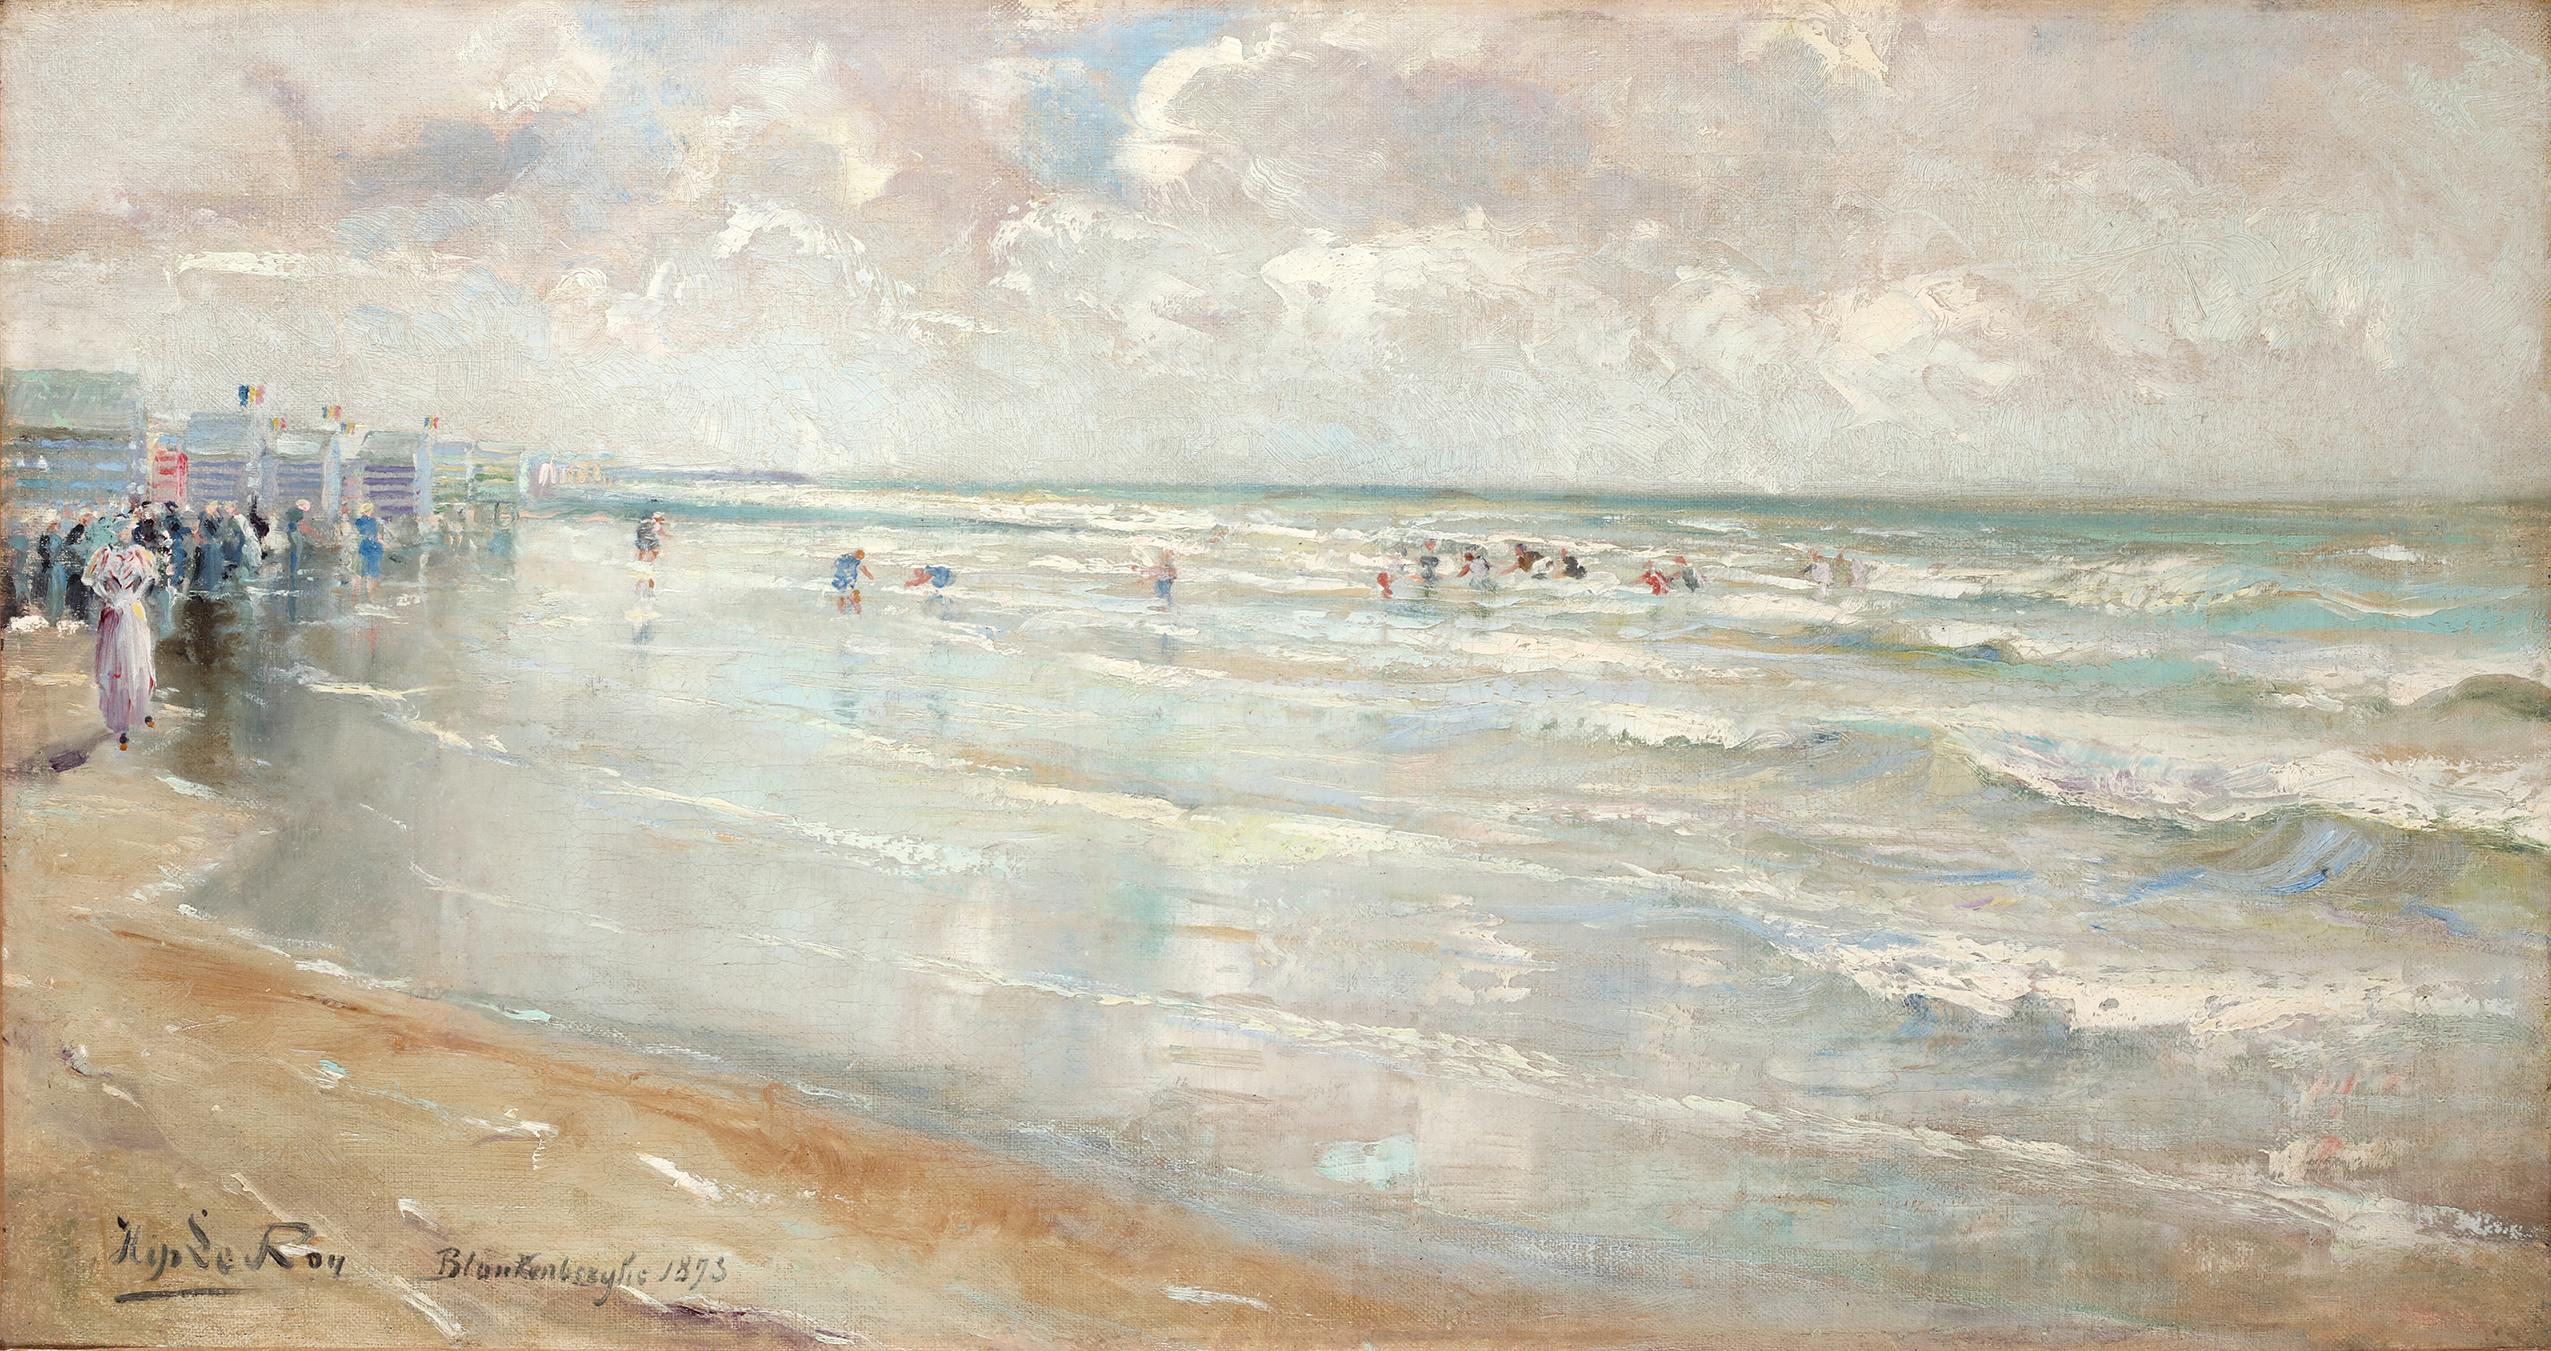 Öl auf Leinwand

Signiert und datiert unten links: "Hip Le Roy, Blankenberghe, 1873,".

Dieses Gemälde fängt die heitere Aussicht von Blankenberghe ein und lädt den Betrachter in das Wesen des Küstenlebens ein. LeRoy hat eine Szene gezaubert, die